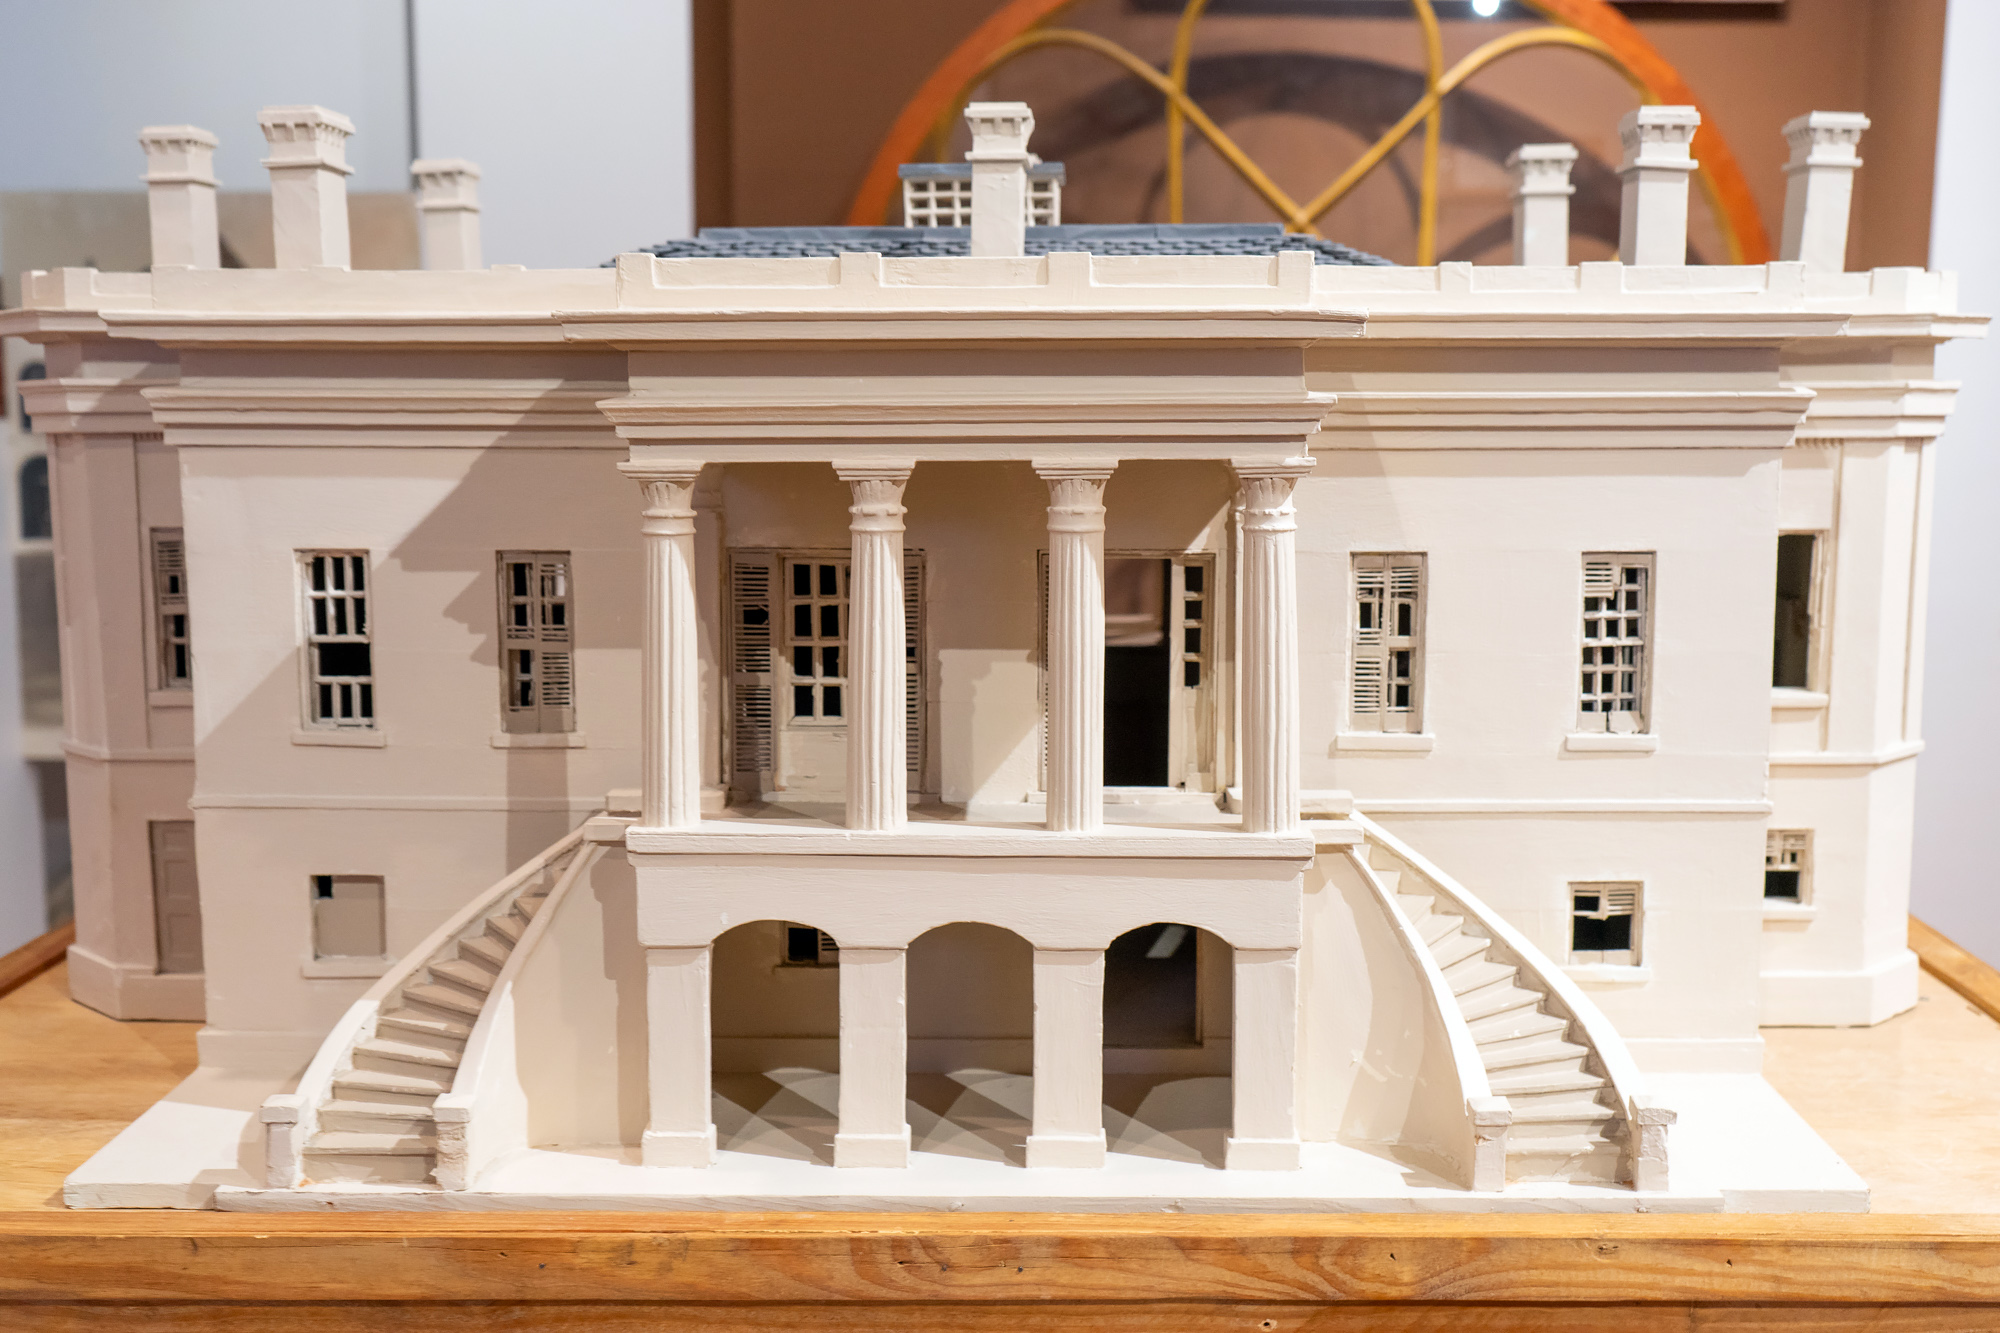 Miniature White House in Savannah